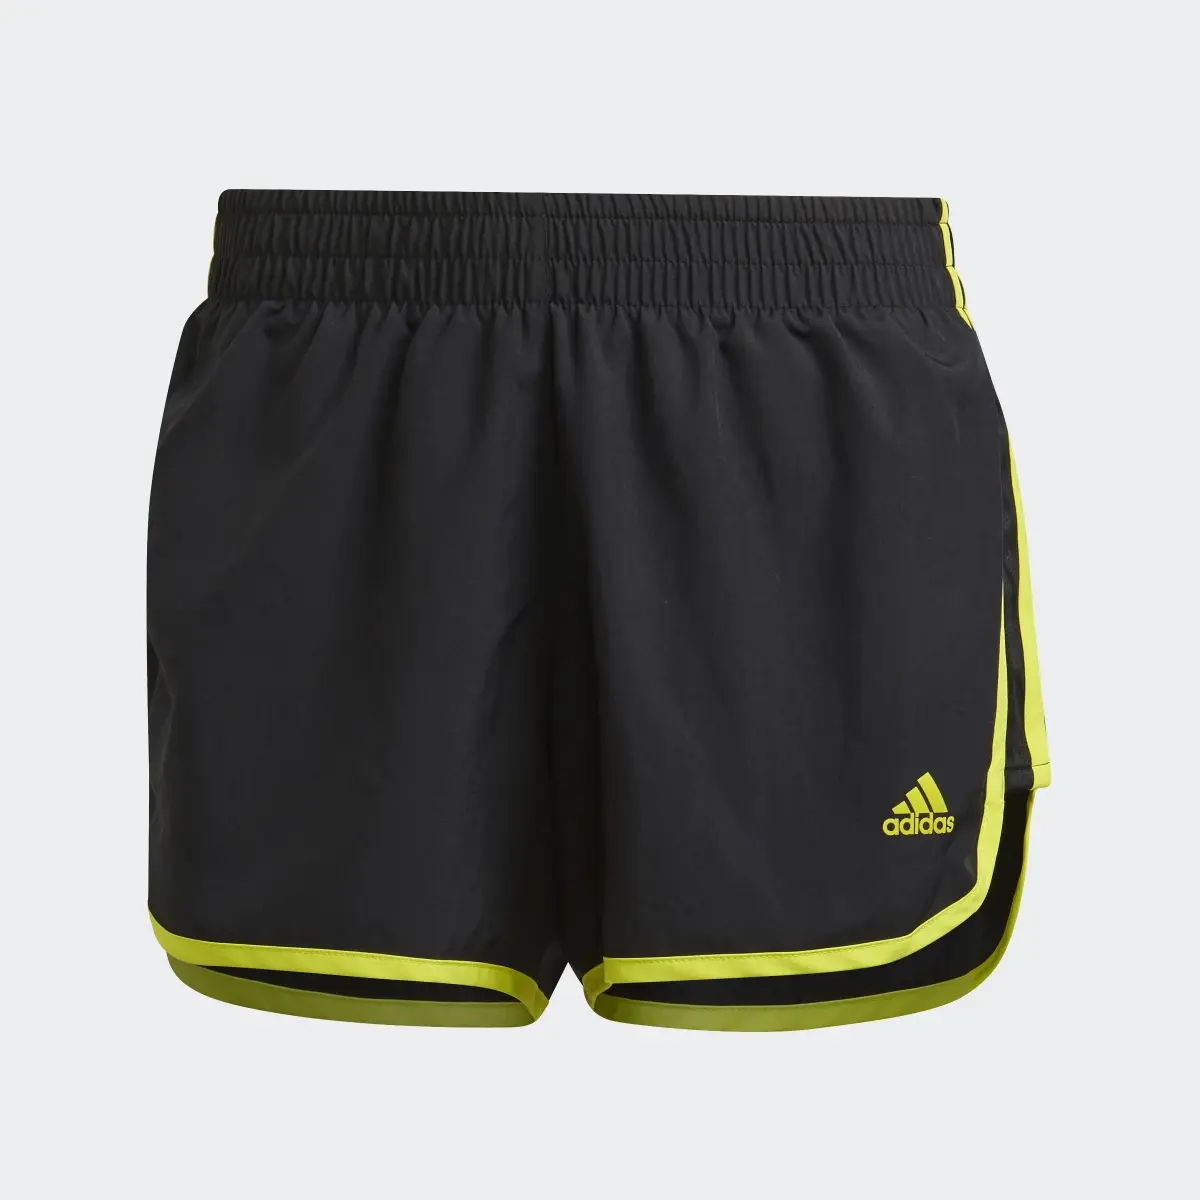 Adidas Marathon 20 Shorts. 1